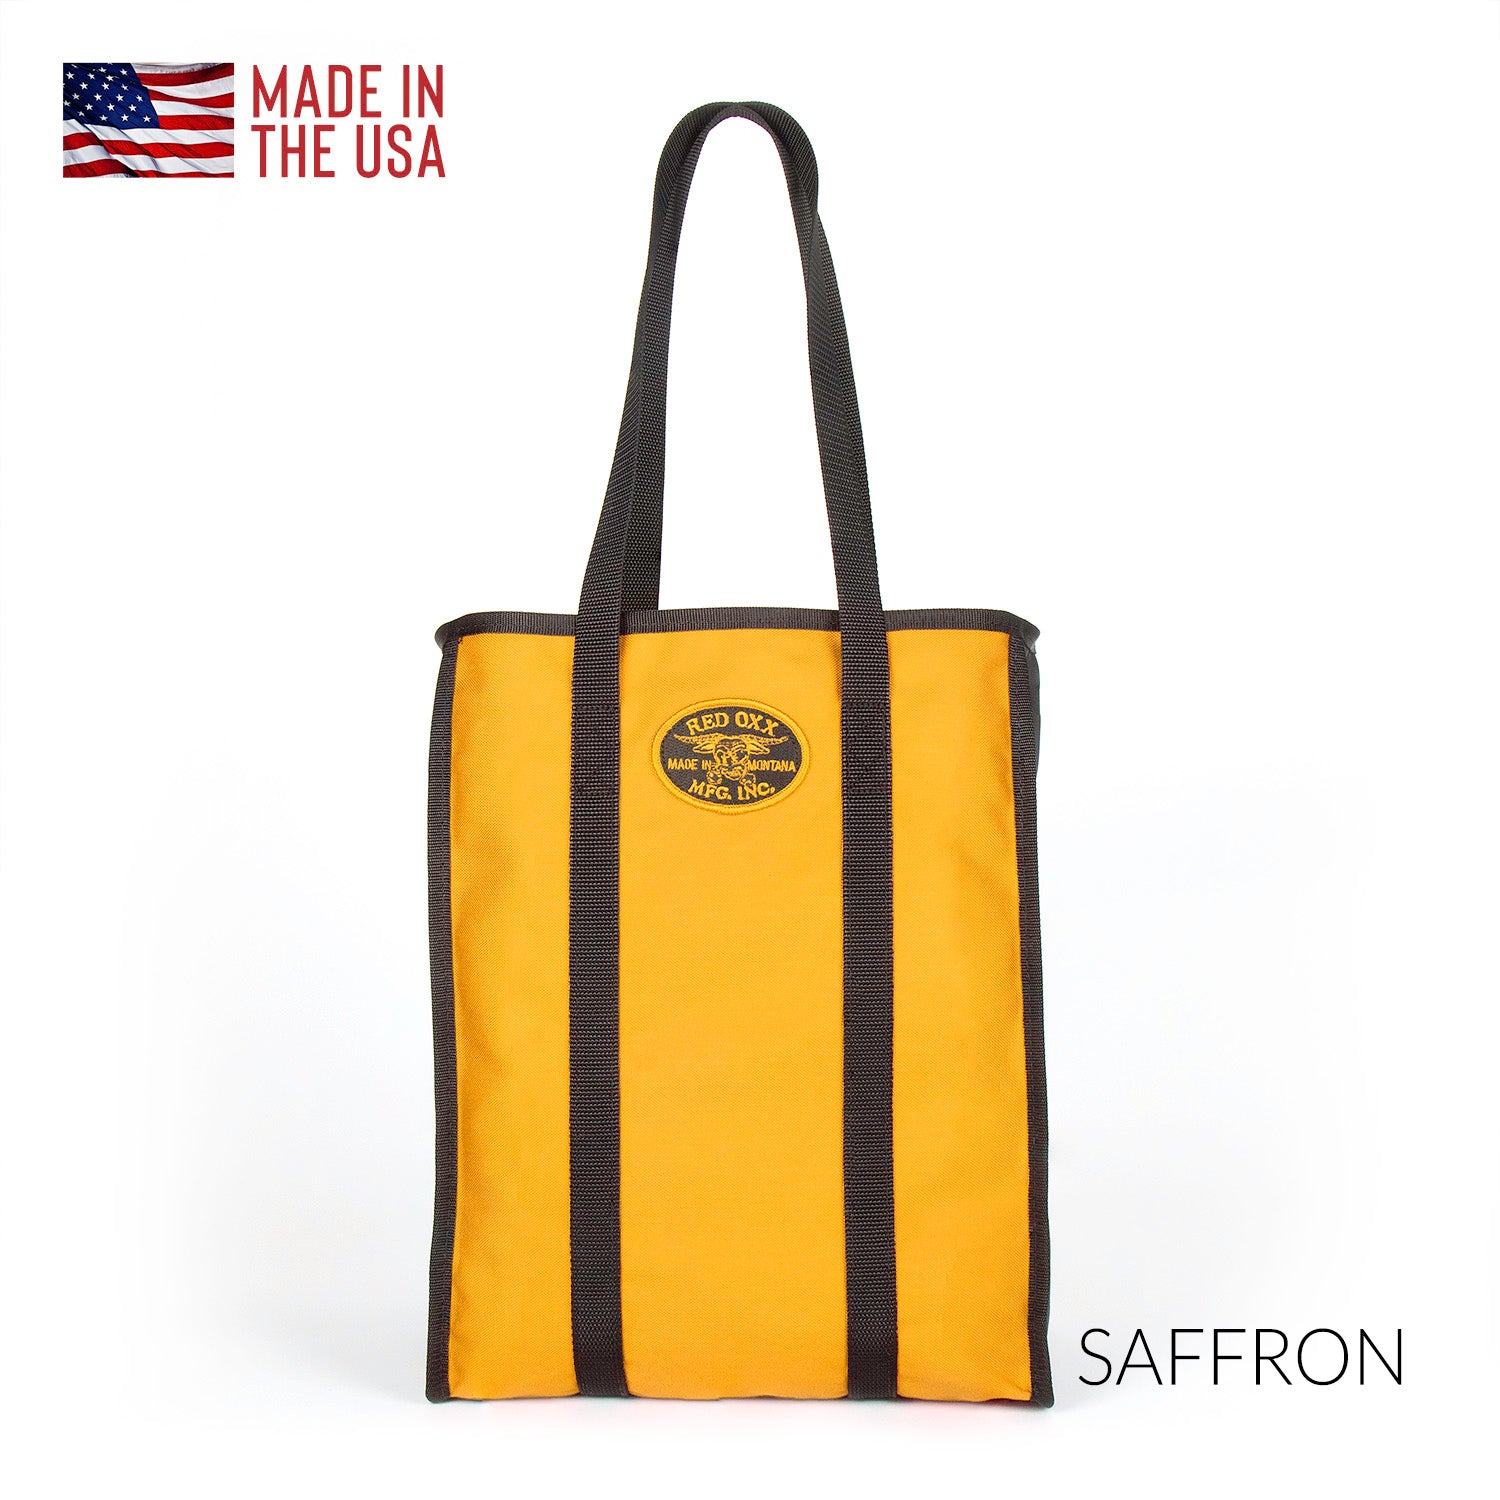 Market tote bag in Saffron